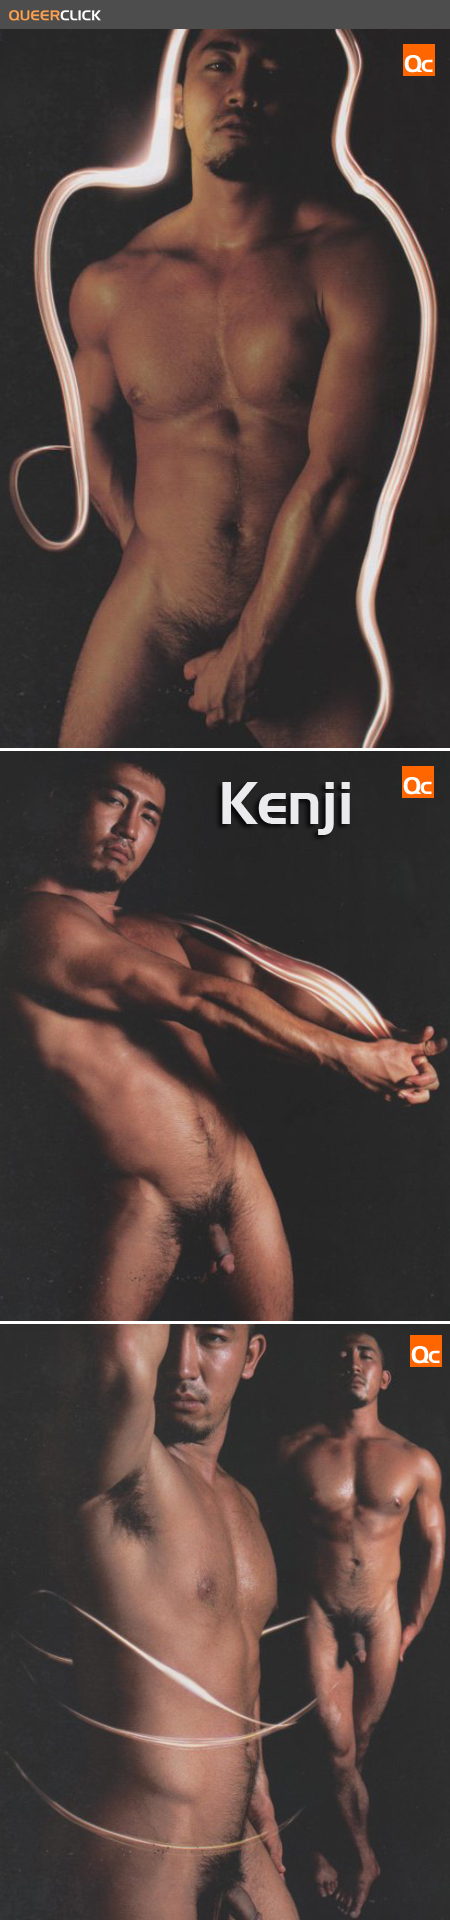 kenji02.jpg